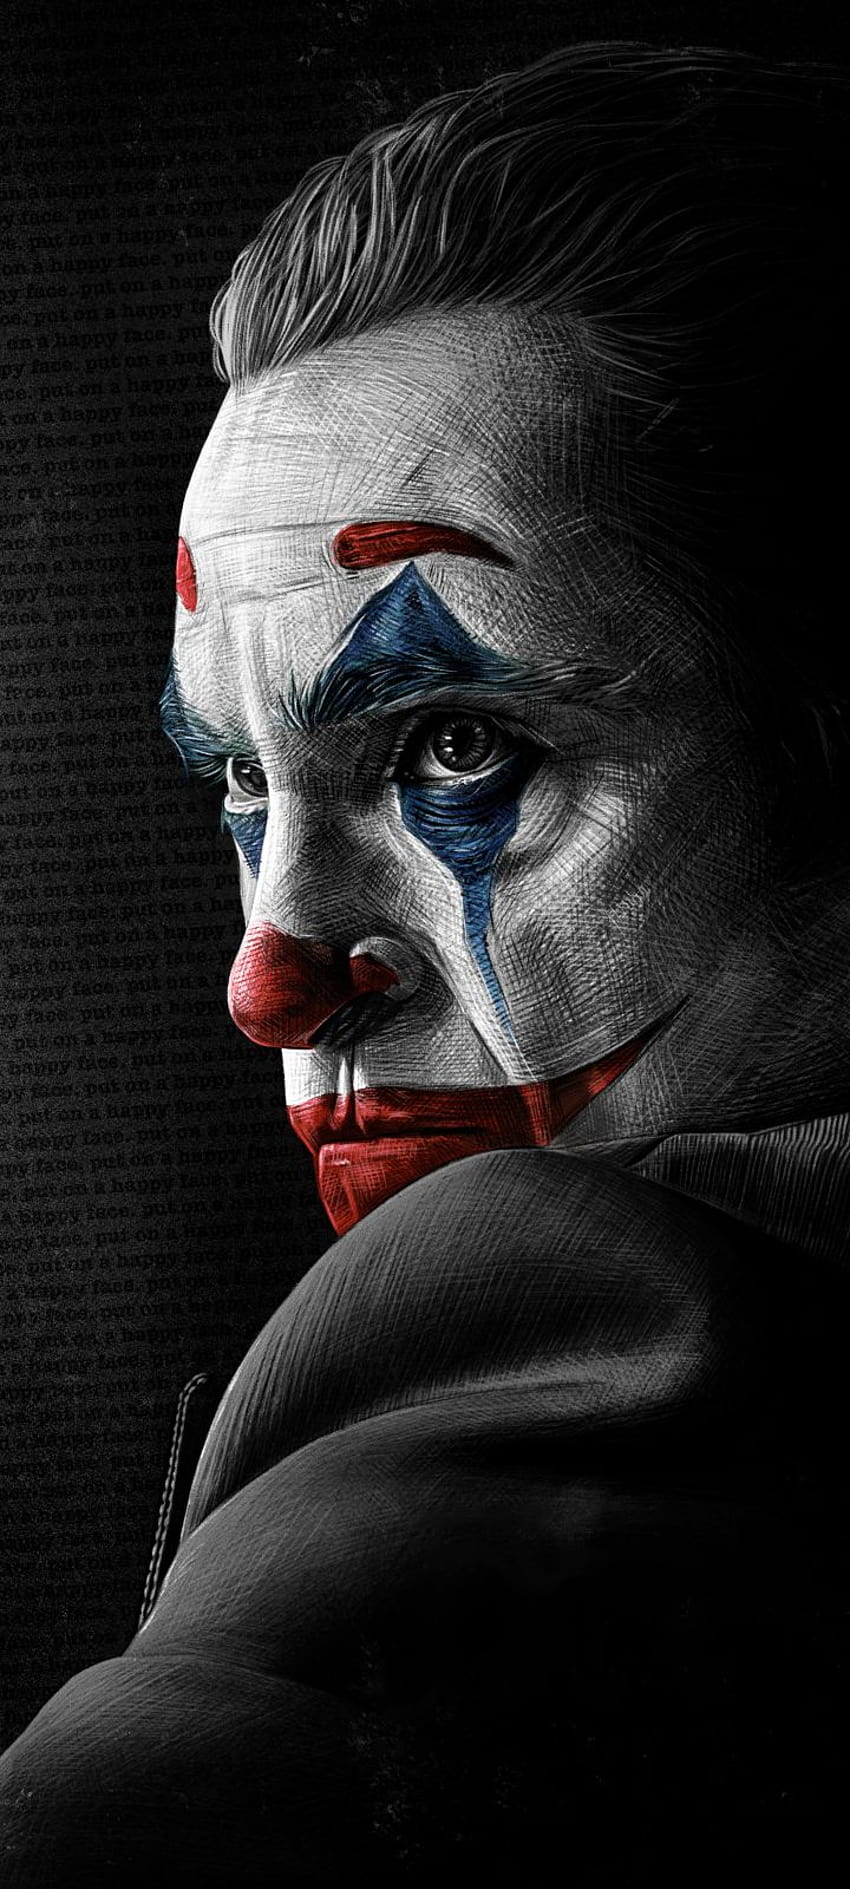 Joaquin Phoenix trong vai Joker sẽ mang đến cho bạn một tổng thể hình ảnh đầy tinh tế và nghệ thuật. Được tạo ra với độ phân giải 720x1600 bằng tay của nghệ sĩ, hình nền sẽ khiến bạn nhận ra tất cả các chi tiết tuyệt vời và độc đáo.